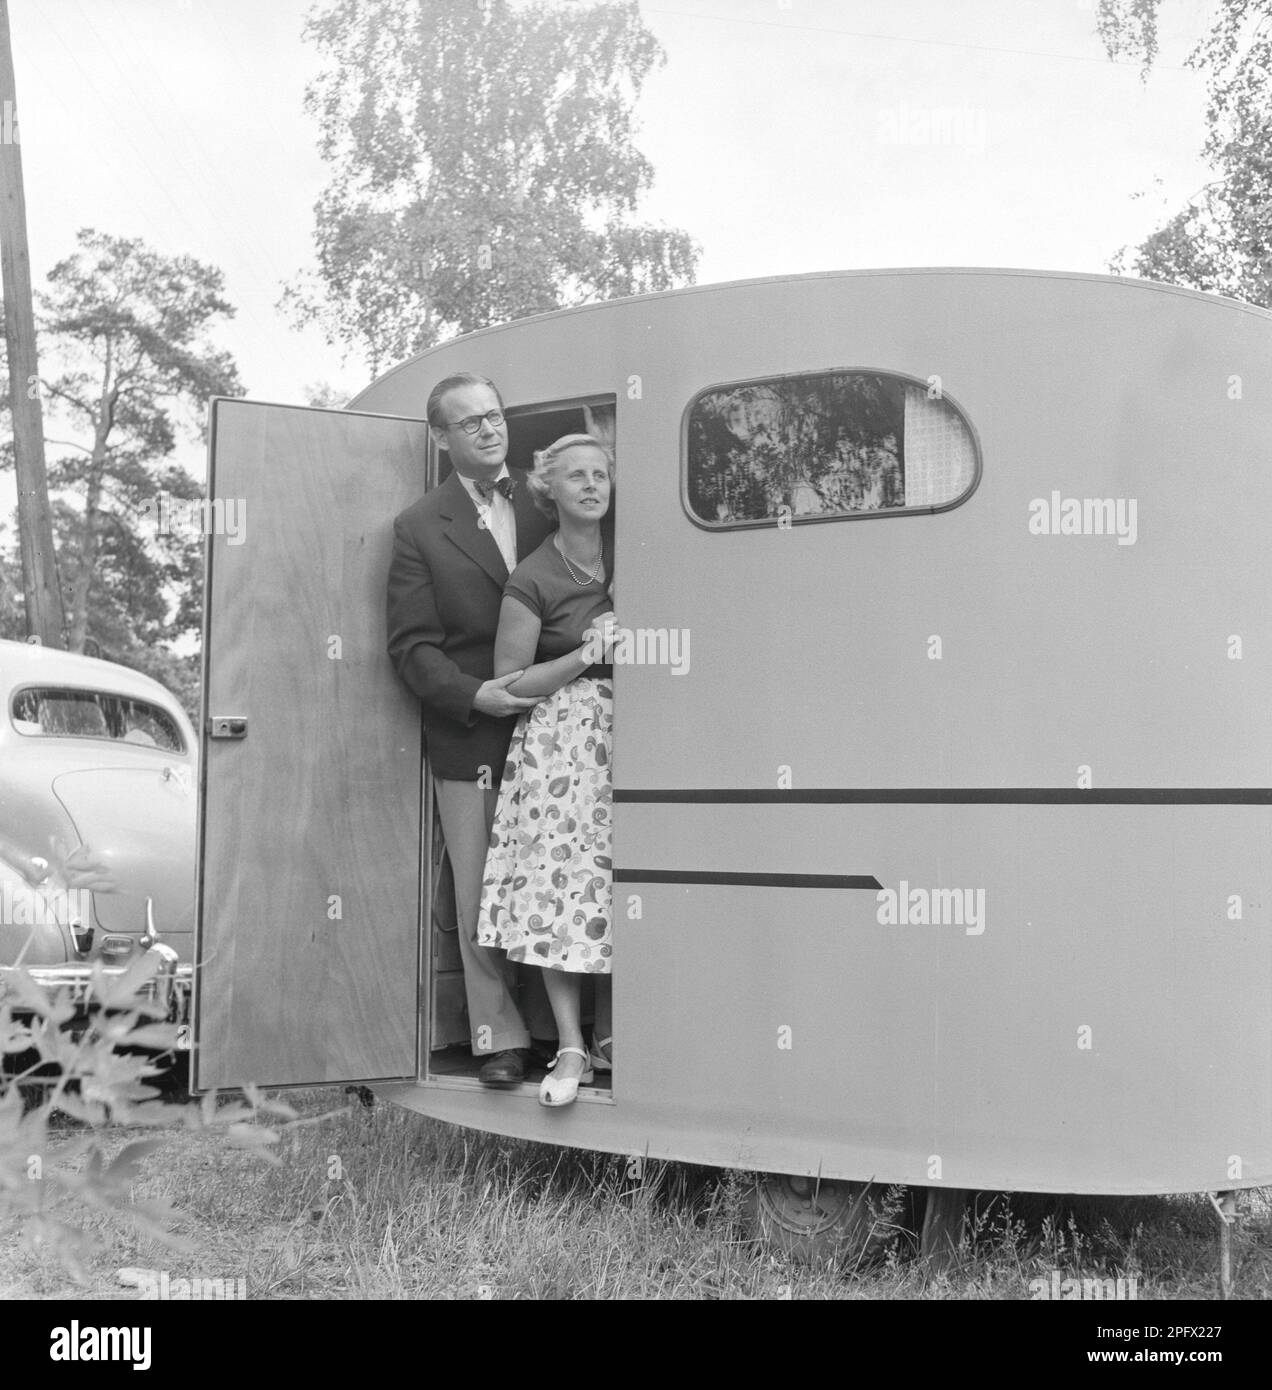 Wohnwagen mit Besitzer Sten Hesser und Frau, die vor der Tür stehen. Das Bild veranschaulicht die Zeit in den 1950er Jahren, als Menschen in größerer Zahl ein Auto hatten und damit Gelegenheiten hatten, im Juli in Schweden zu reisen und Urlaub zu machen. 1953. ref. SSMSAX000433L Stockfoto